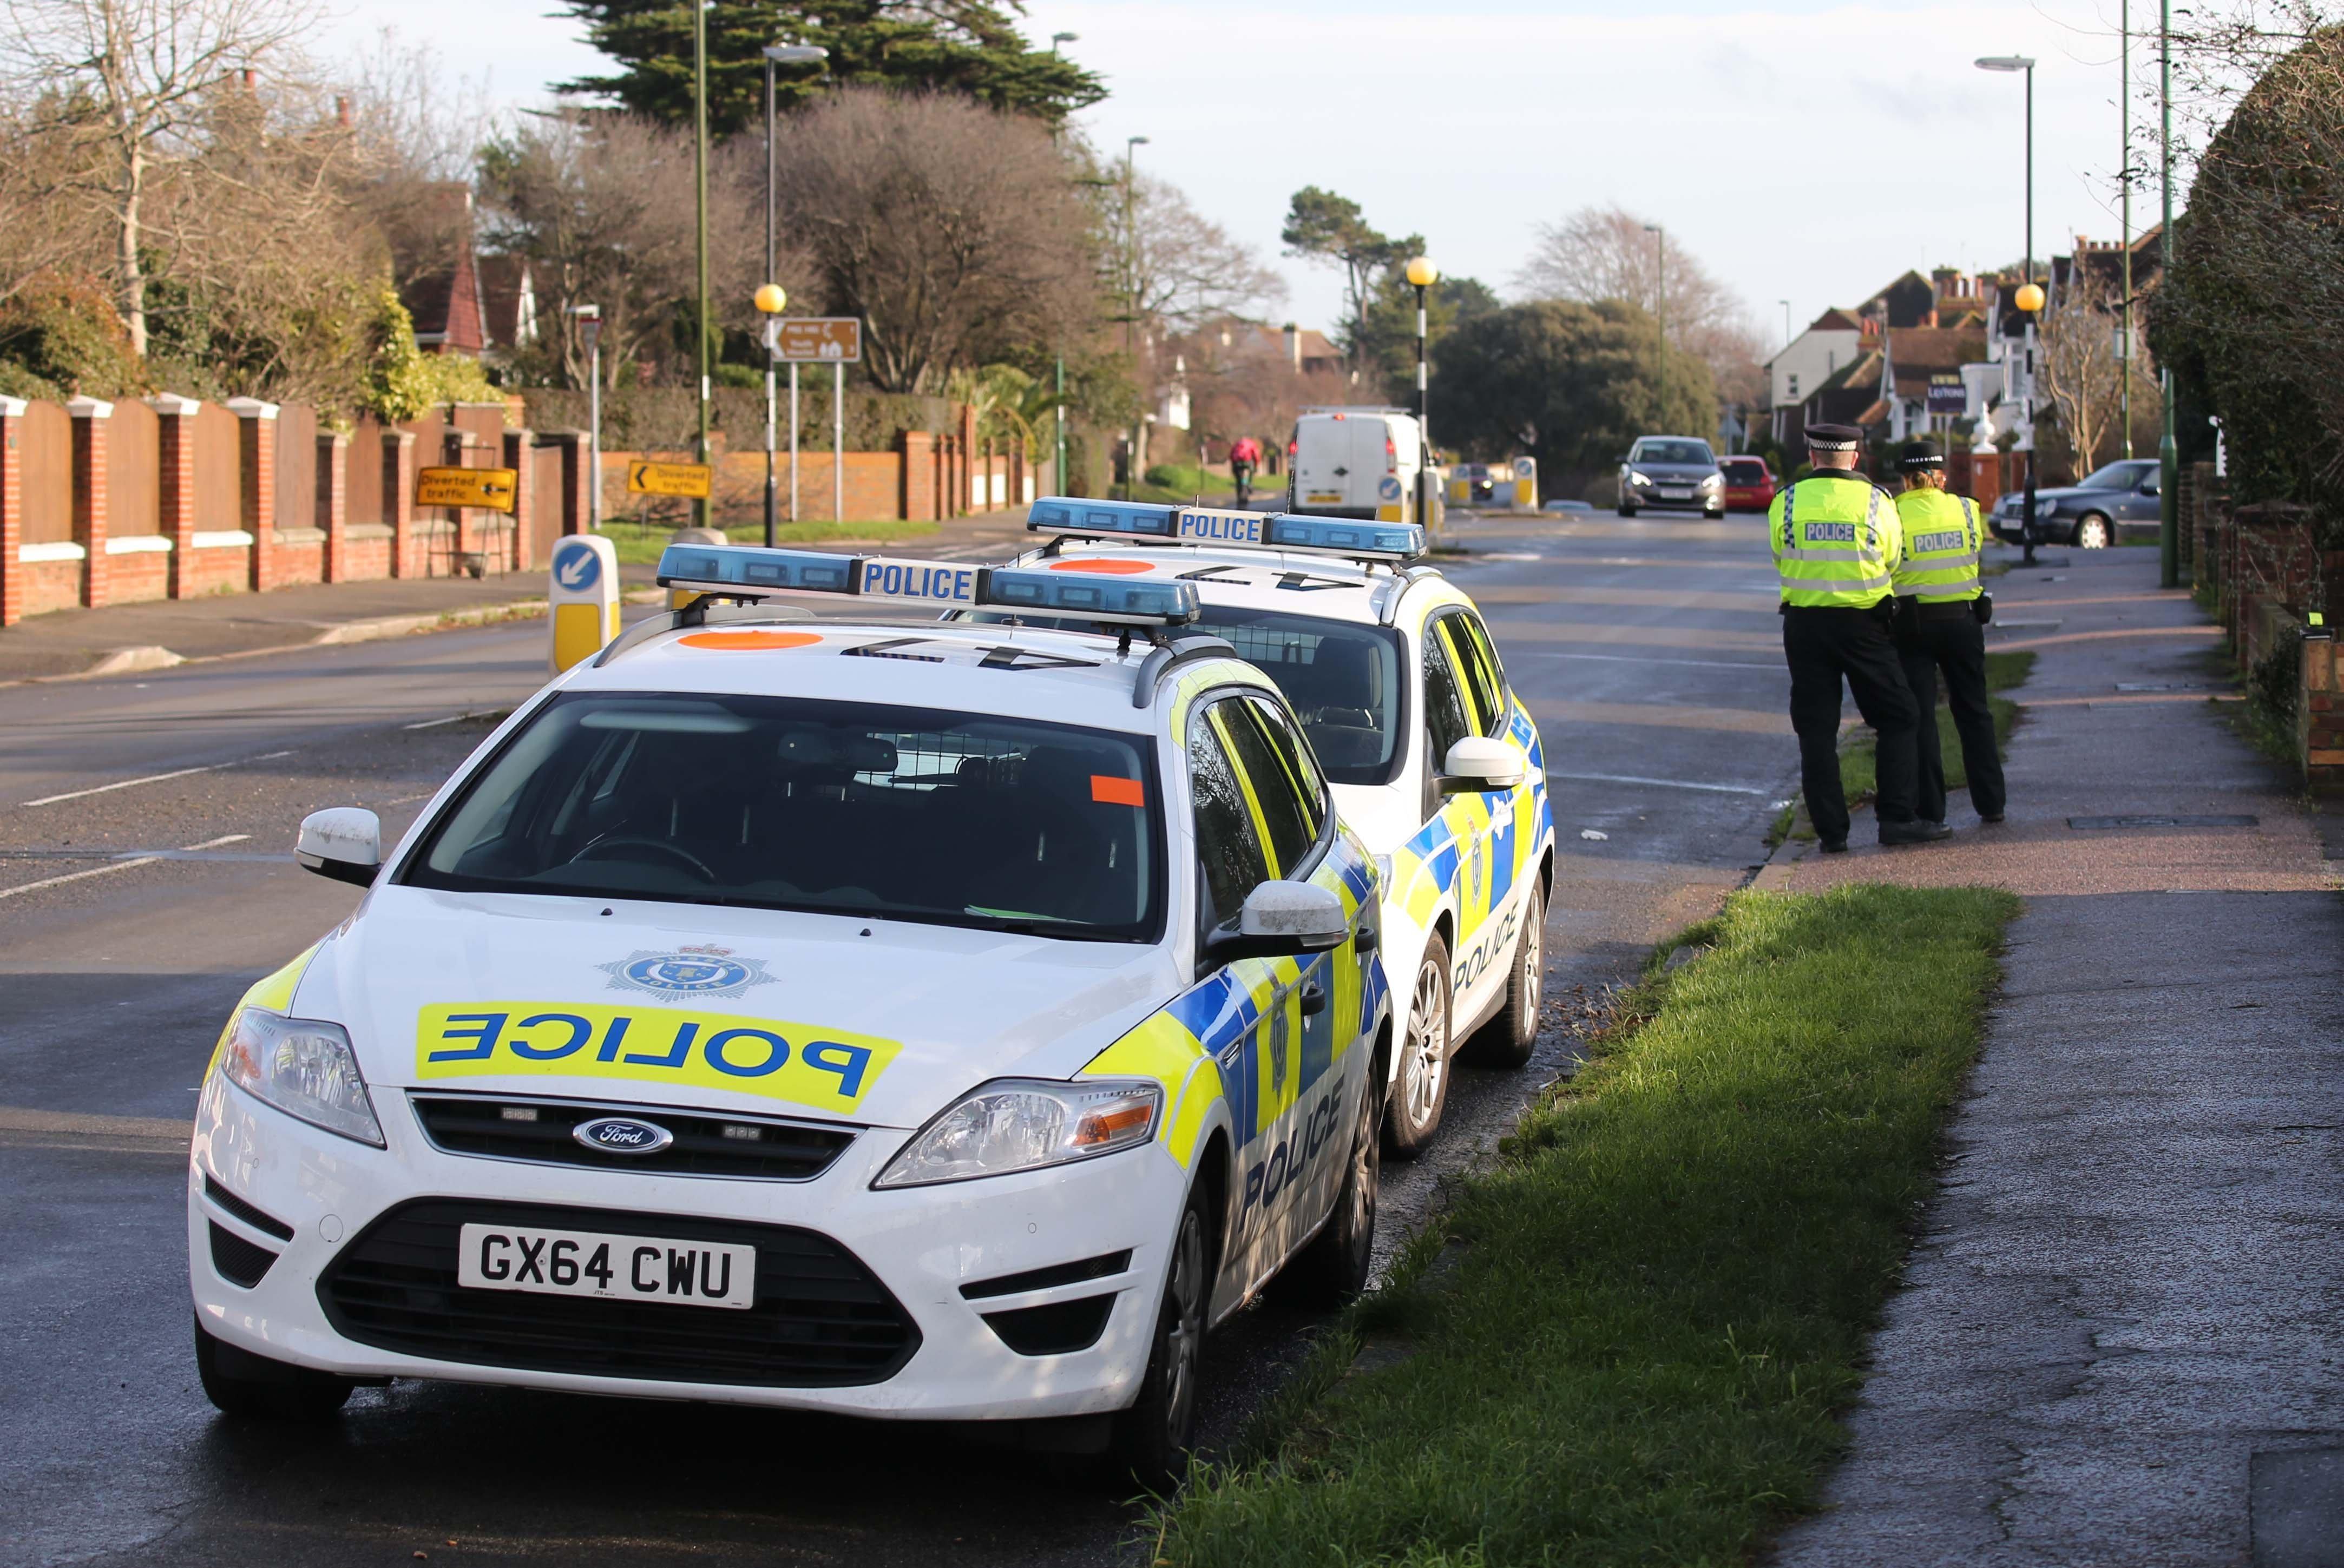 Officers checking drivers in Upper Shoreham Road, Shoreham